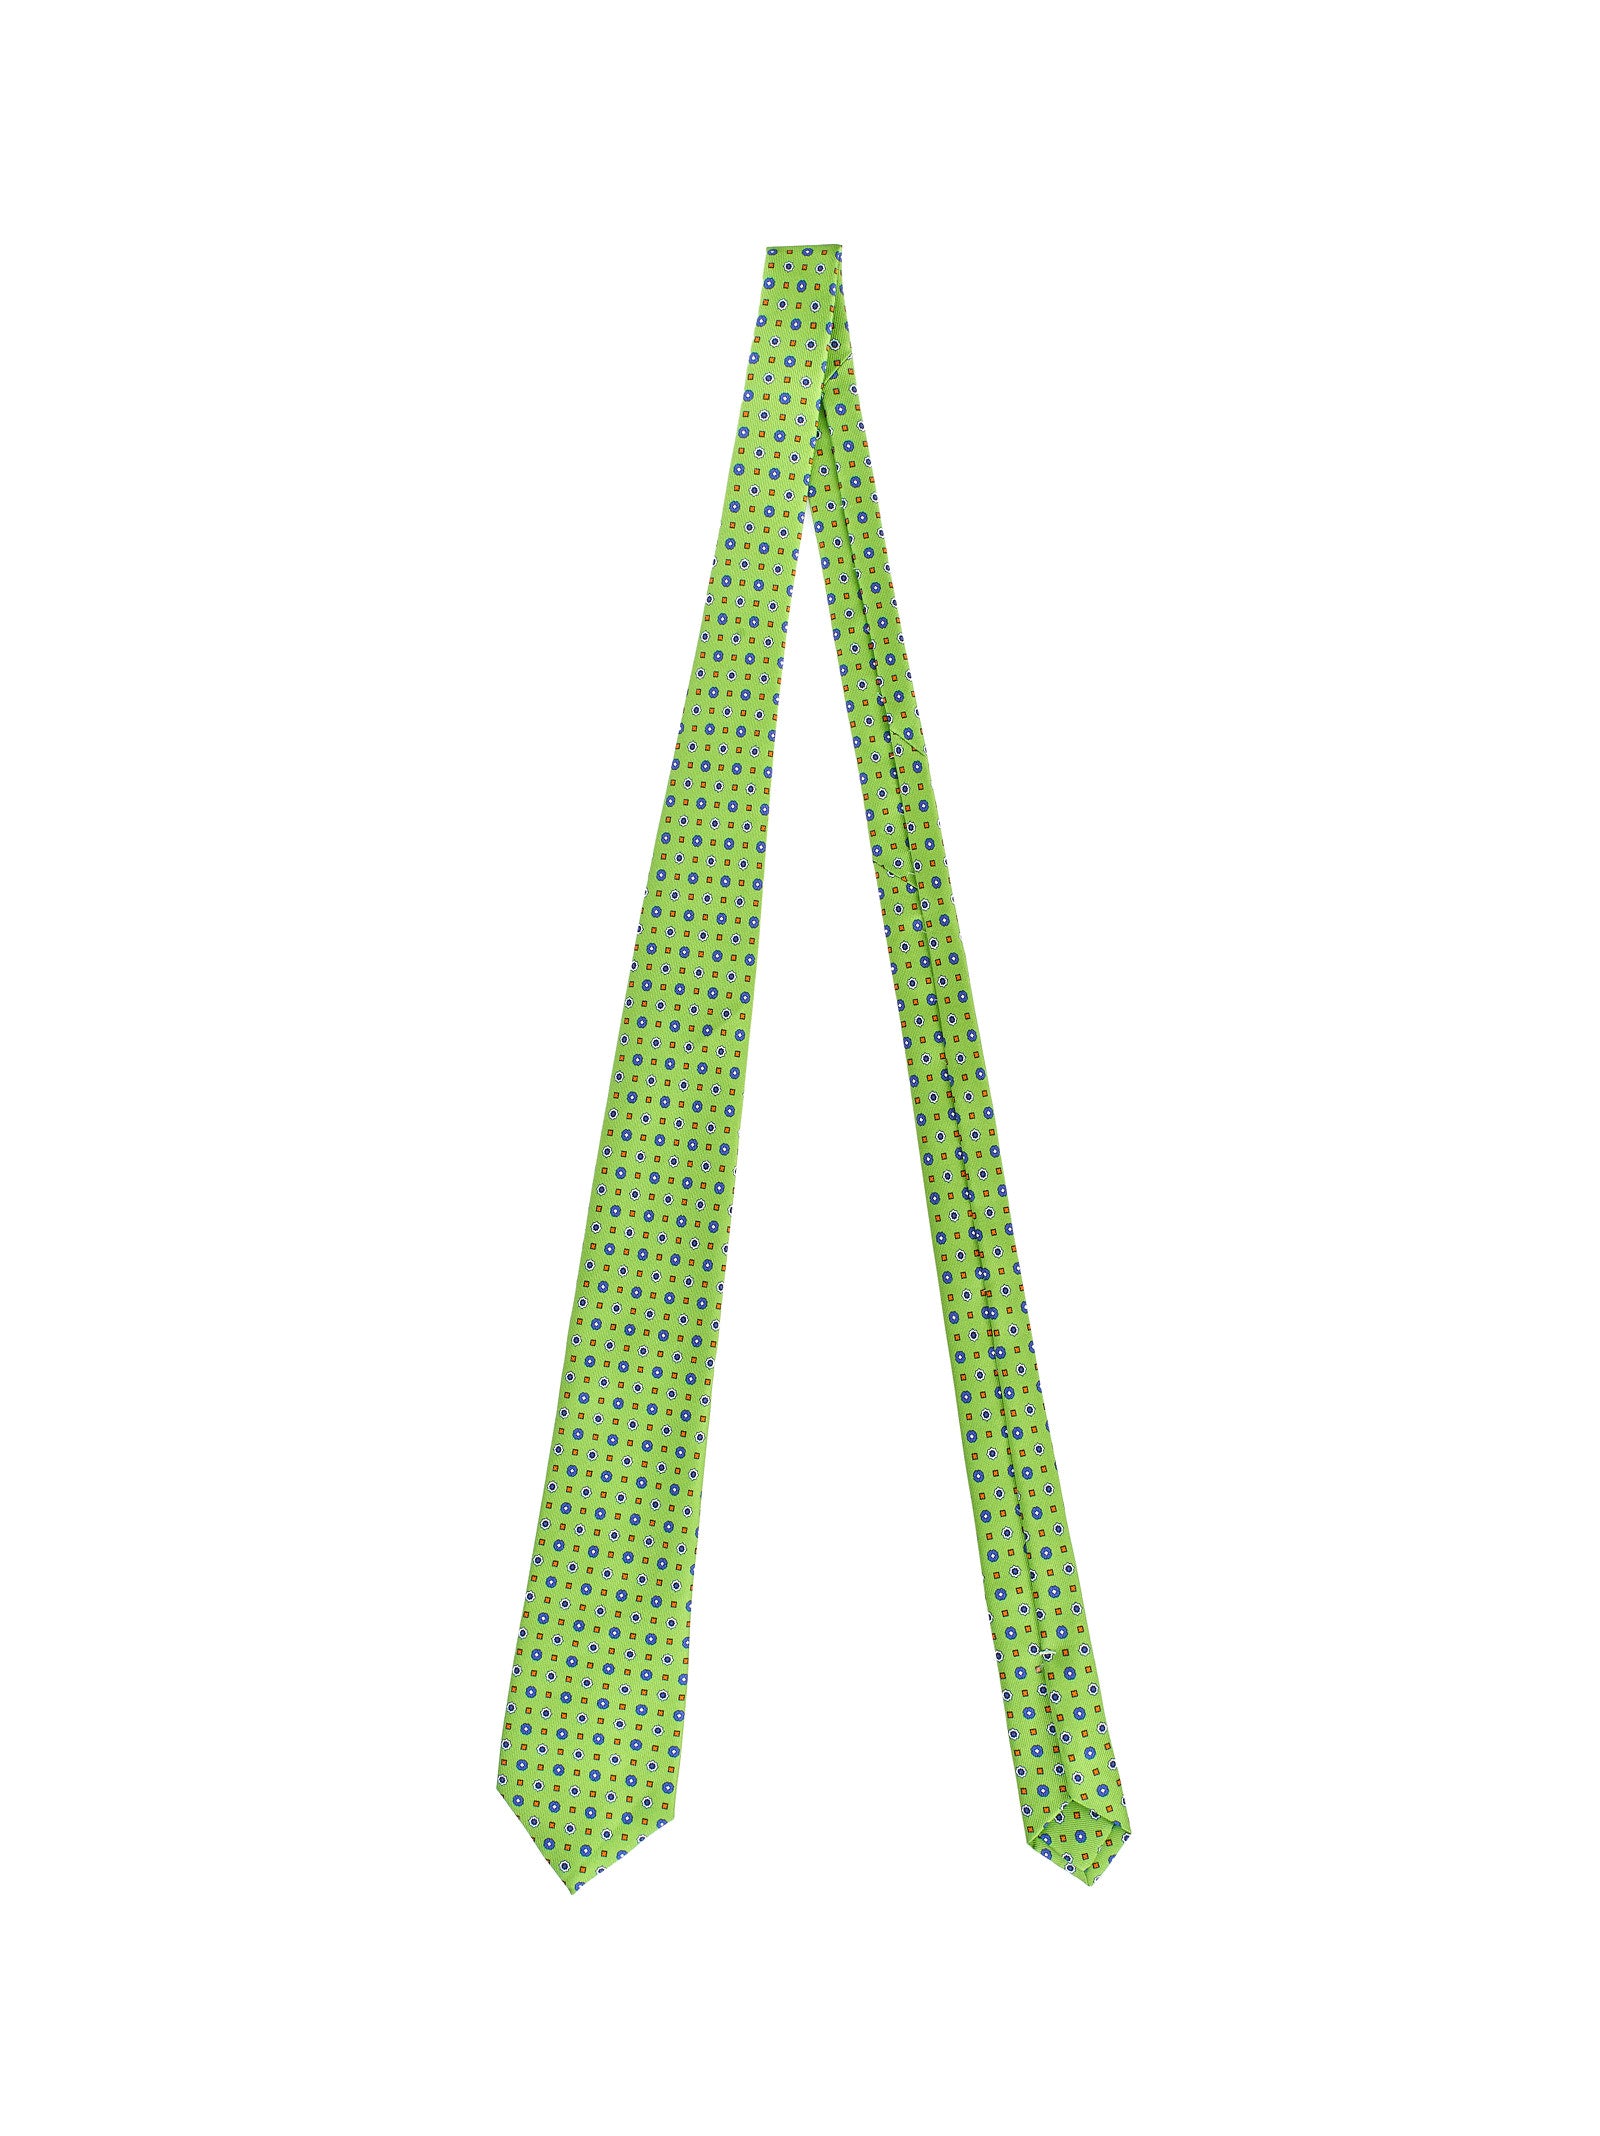 Cravatta PETRONIUS Micro fantasia
Verde